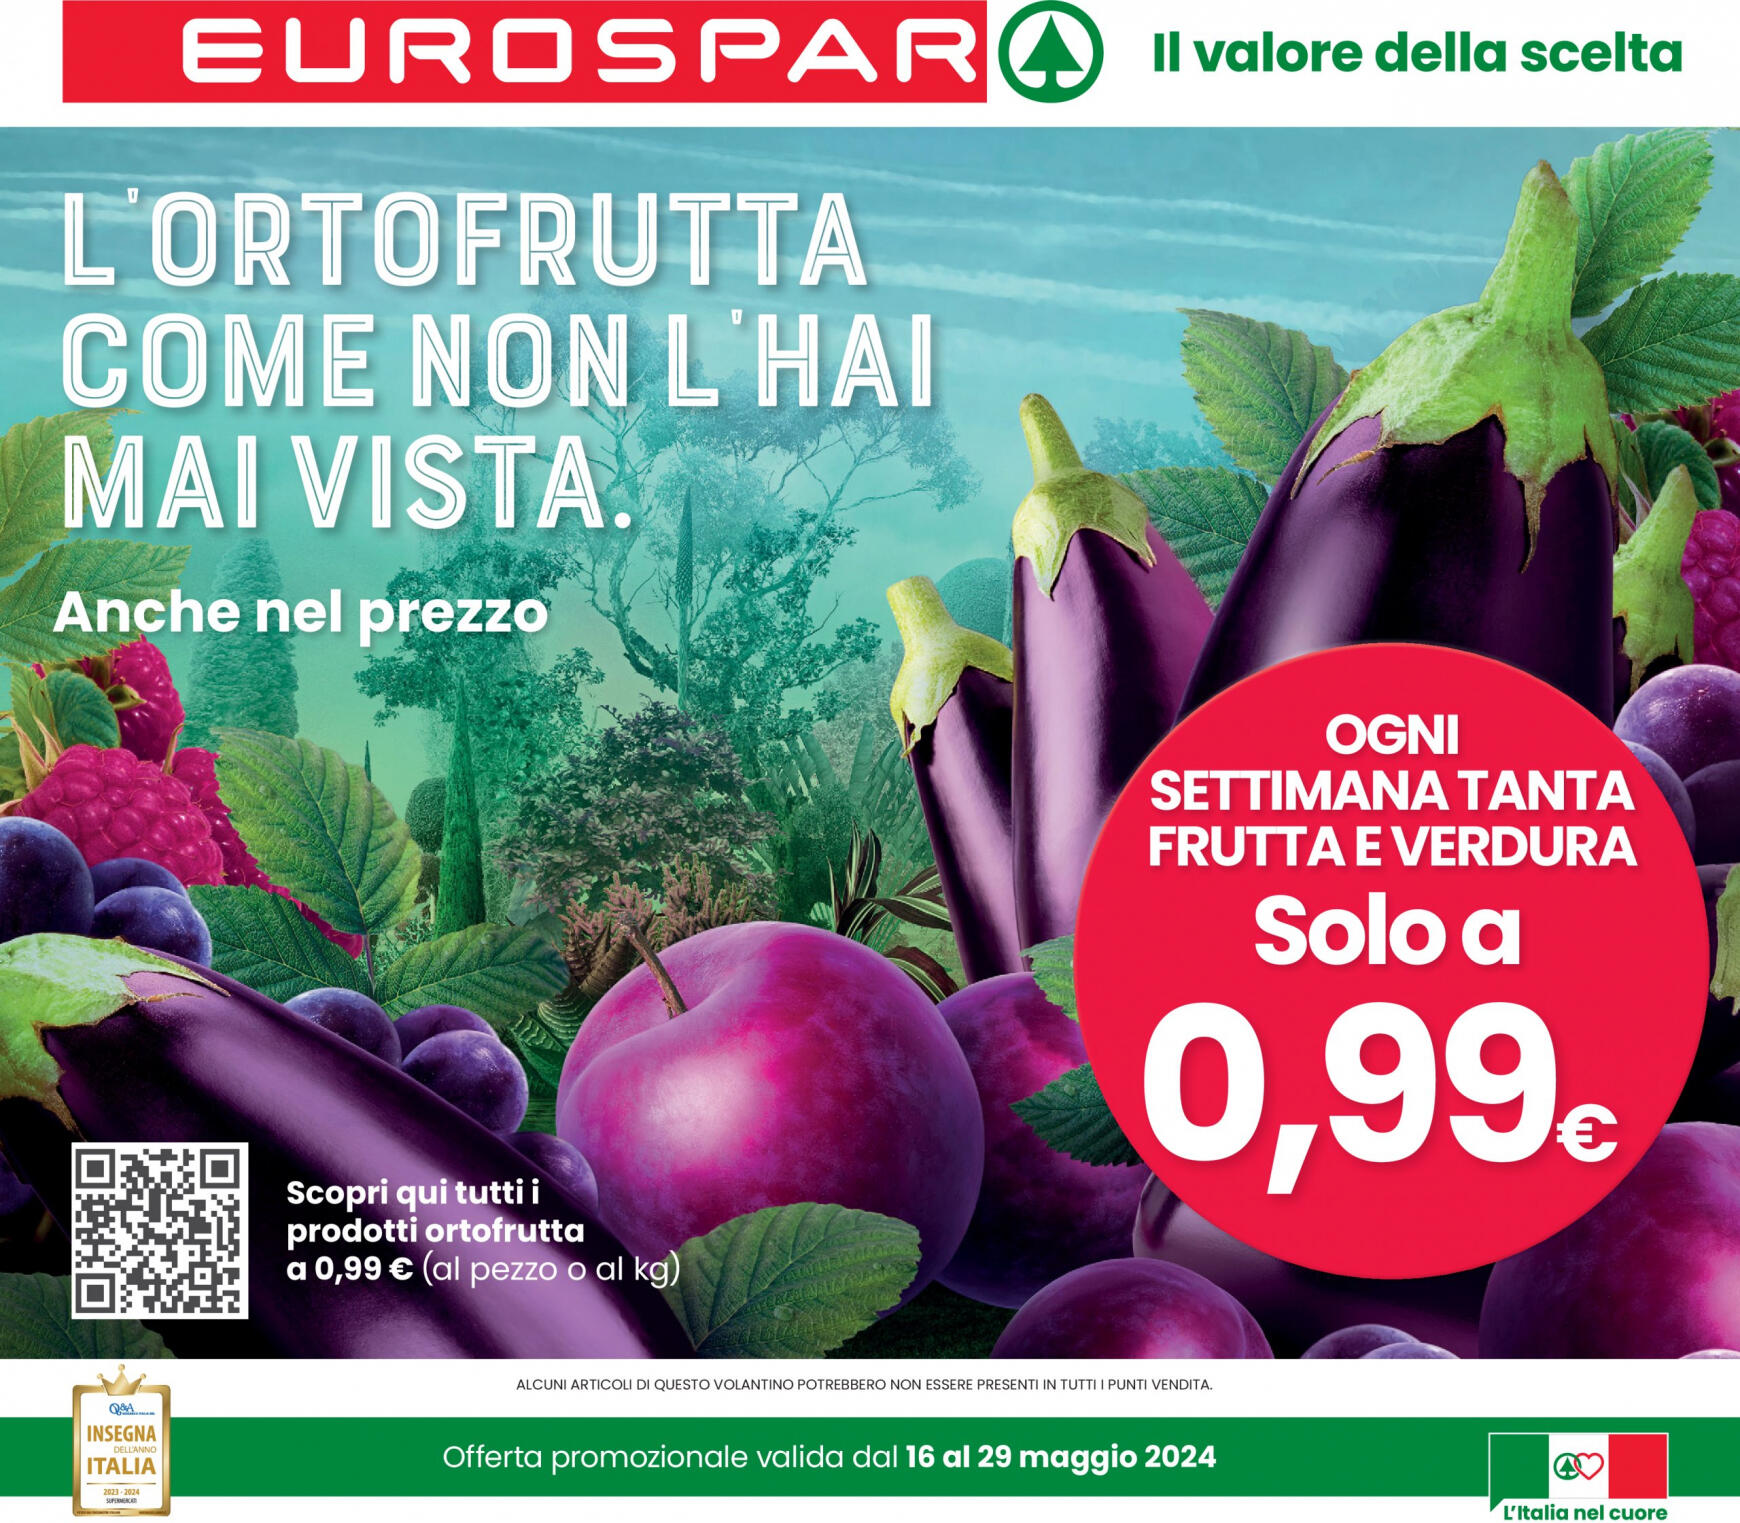 eurospar - Nuovo volantino Eurospar 16.05. - 29.05.